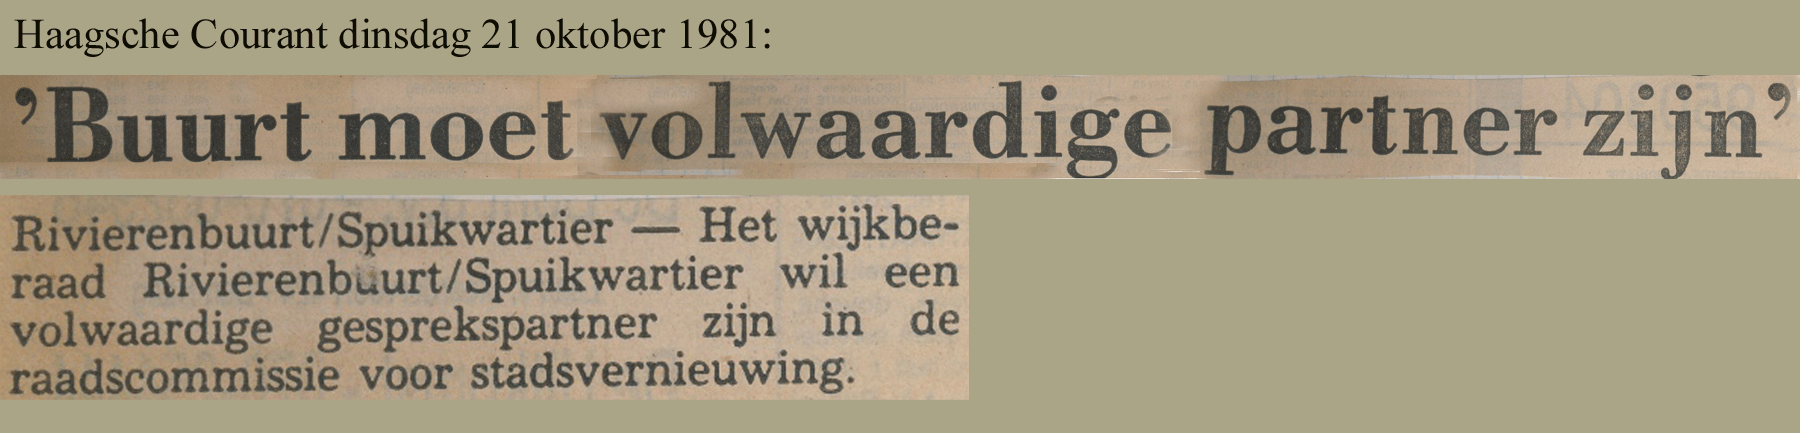 Krantenkop Haagsche Courant over wijkberaad Rivierenbuurt/Spuikwartier